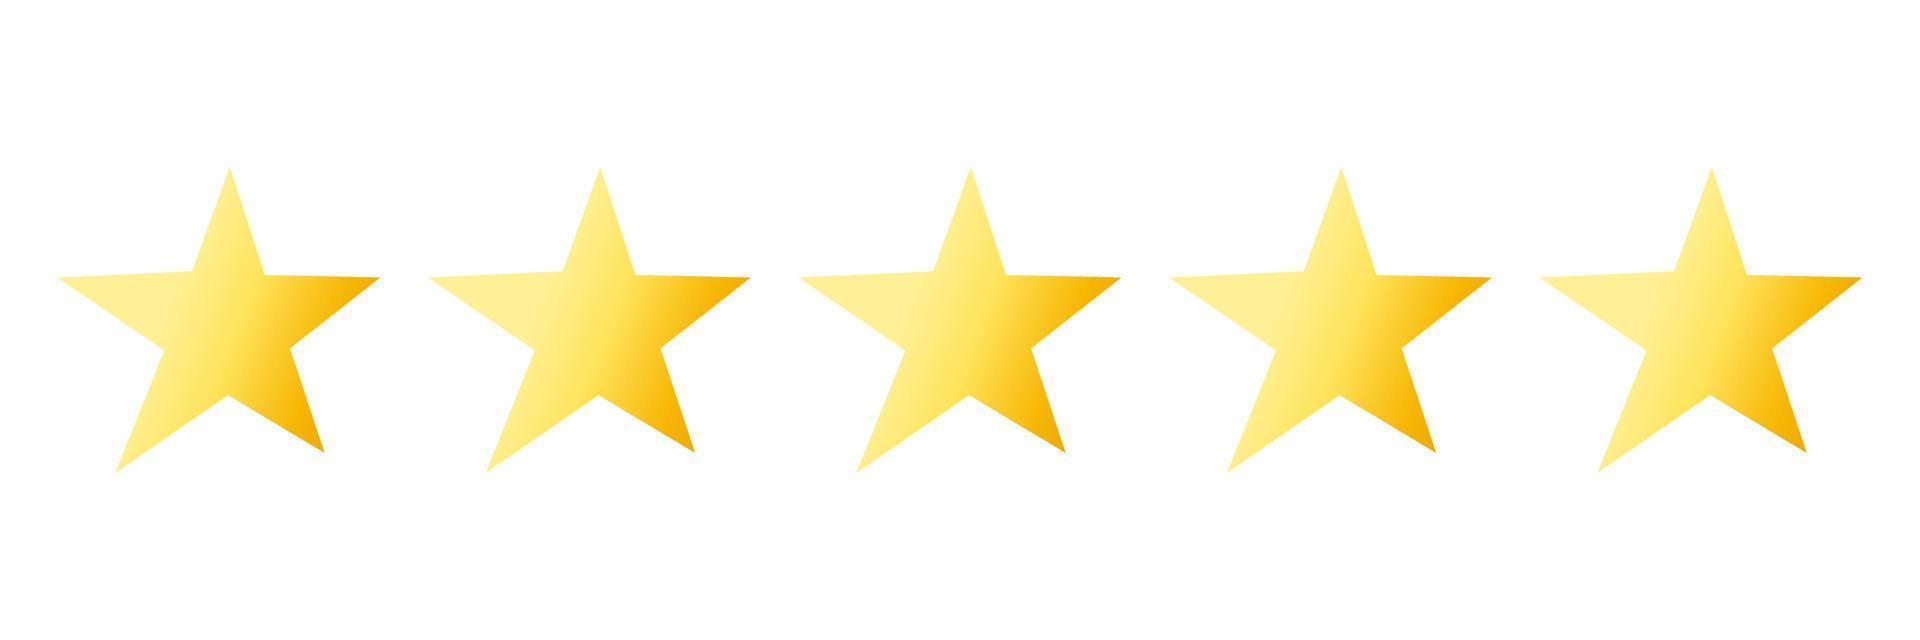 kvalitetsbetyg ljus ikon med fem gula stjärnor isolerade på vitt. utvärdering av varor, skriva recensioner av leverans, hotell, butiker. vektor illustration. platt